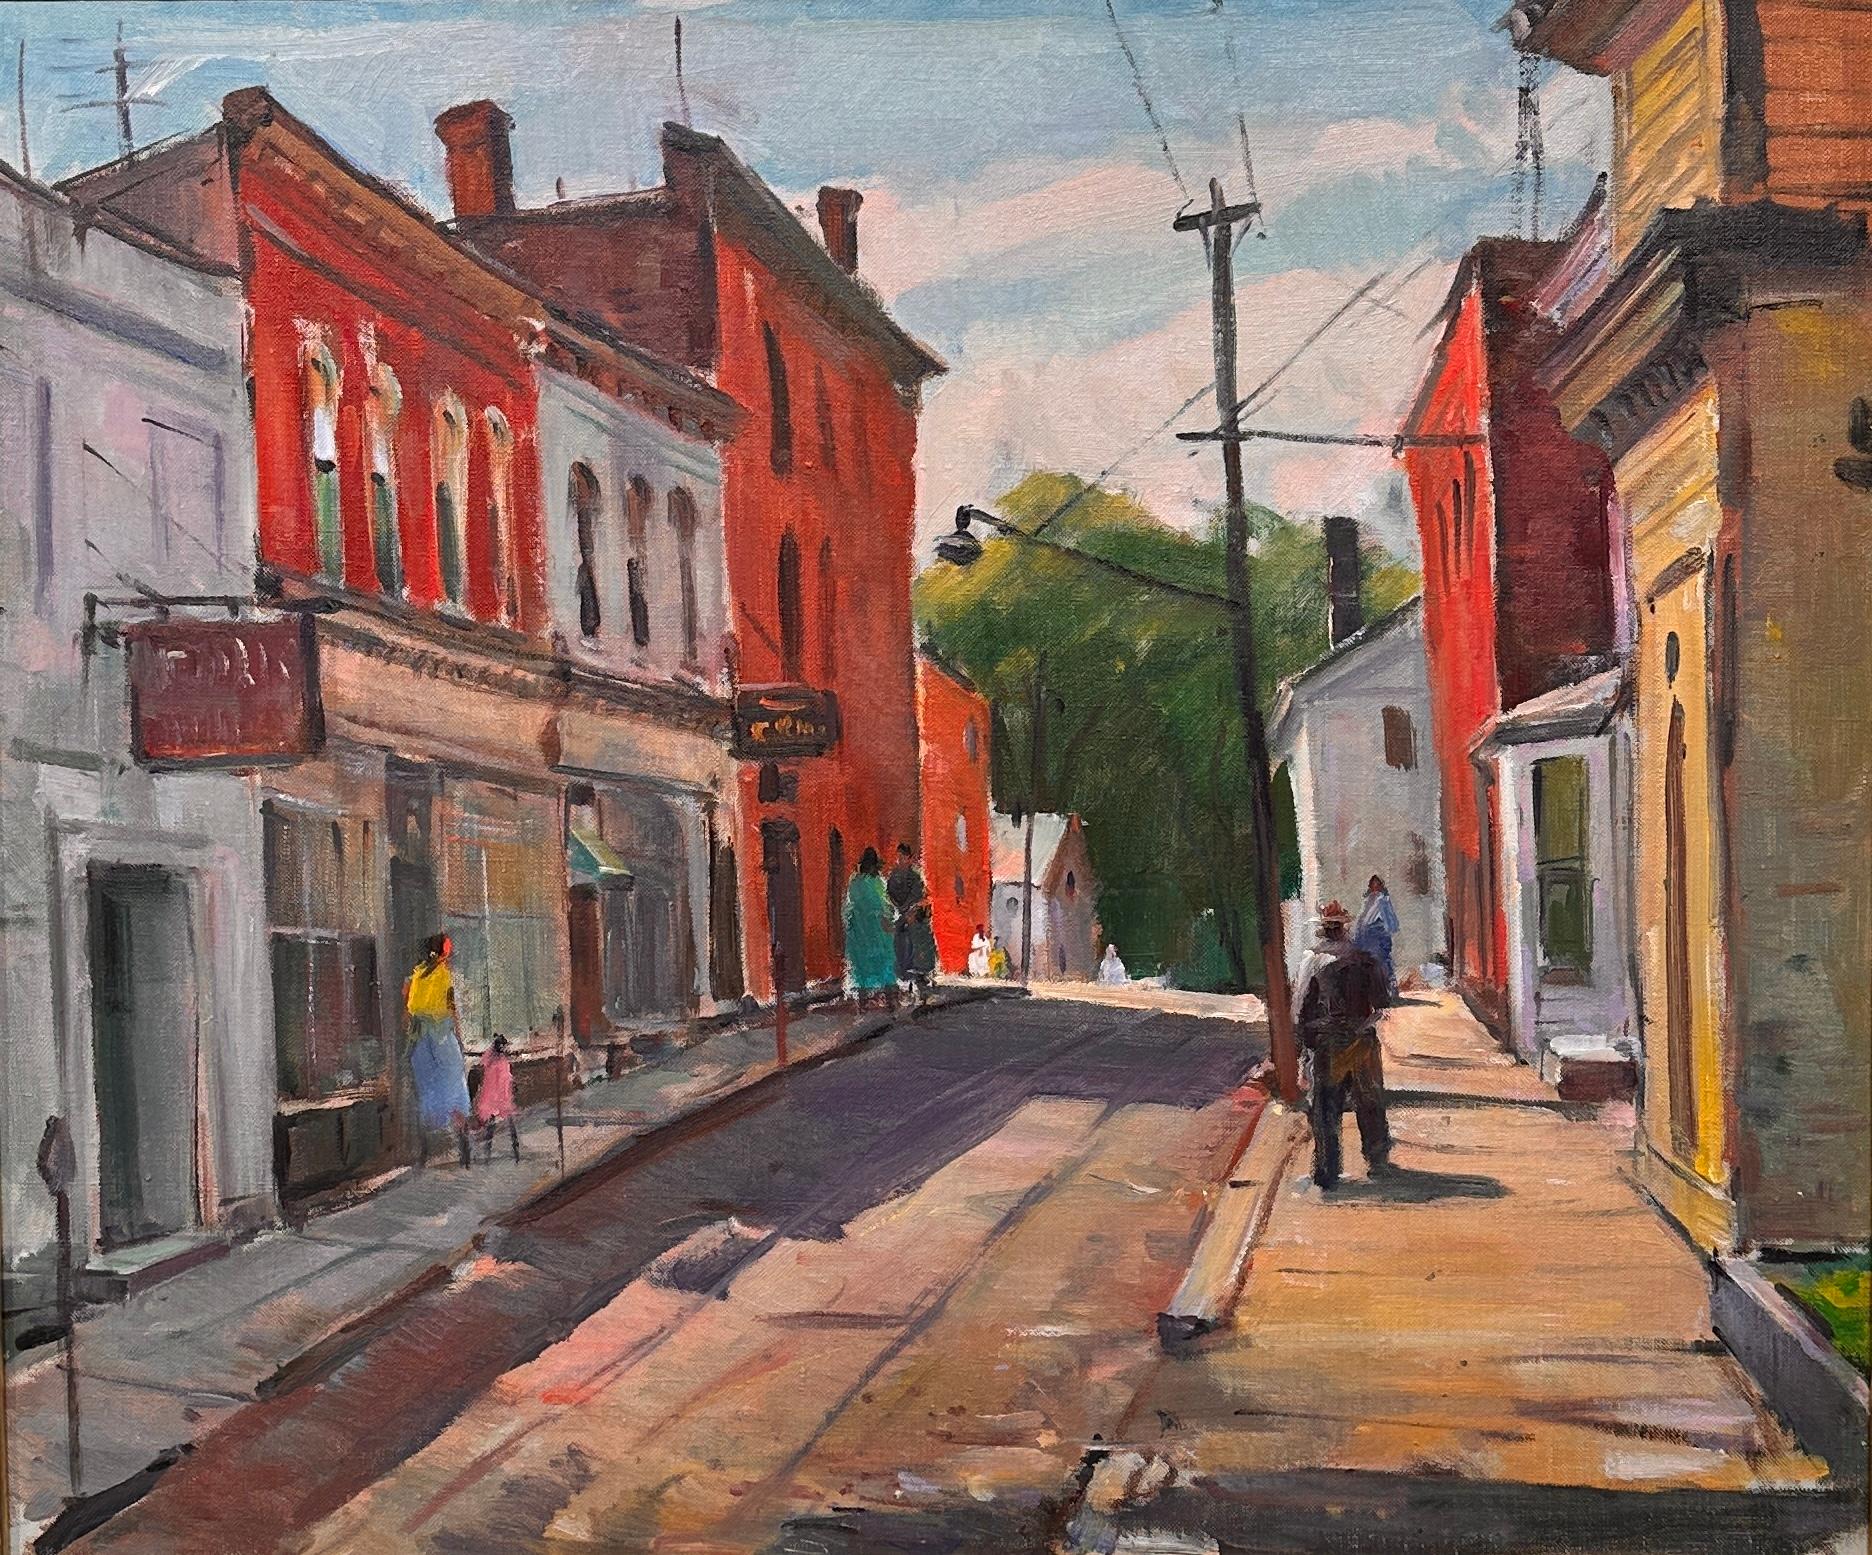 Carl Peters Landscape Painting - "Sidewalk Downtown" - Cape Ann Artist, Street Scene in Gloucester, MA